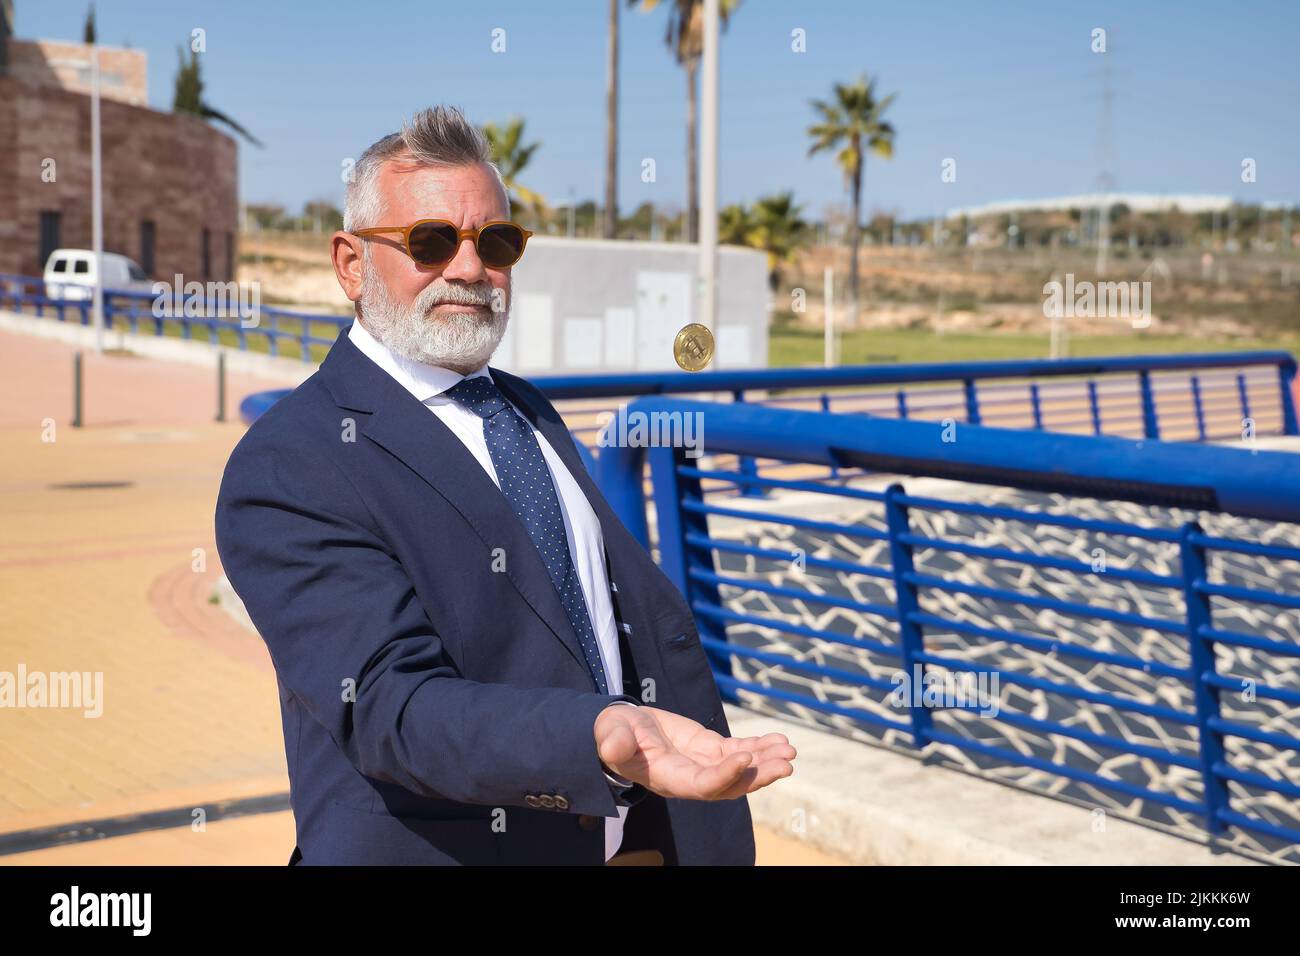 Hombre maduro, ejecutivo, de pelo gris, barbudo, con gafas de sol, chaqueta y corbata, lanzando una criptomoneda en el aire con la mano. Concepto ejecutivo Foto de stock